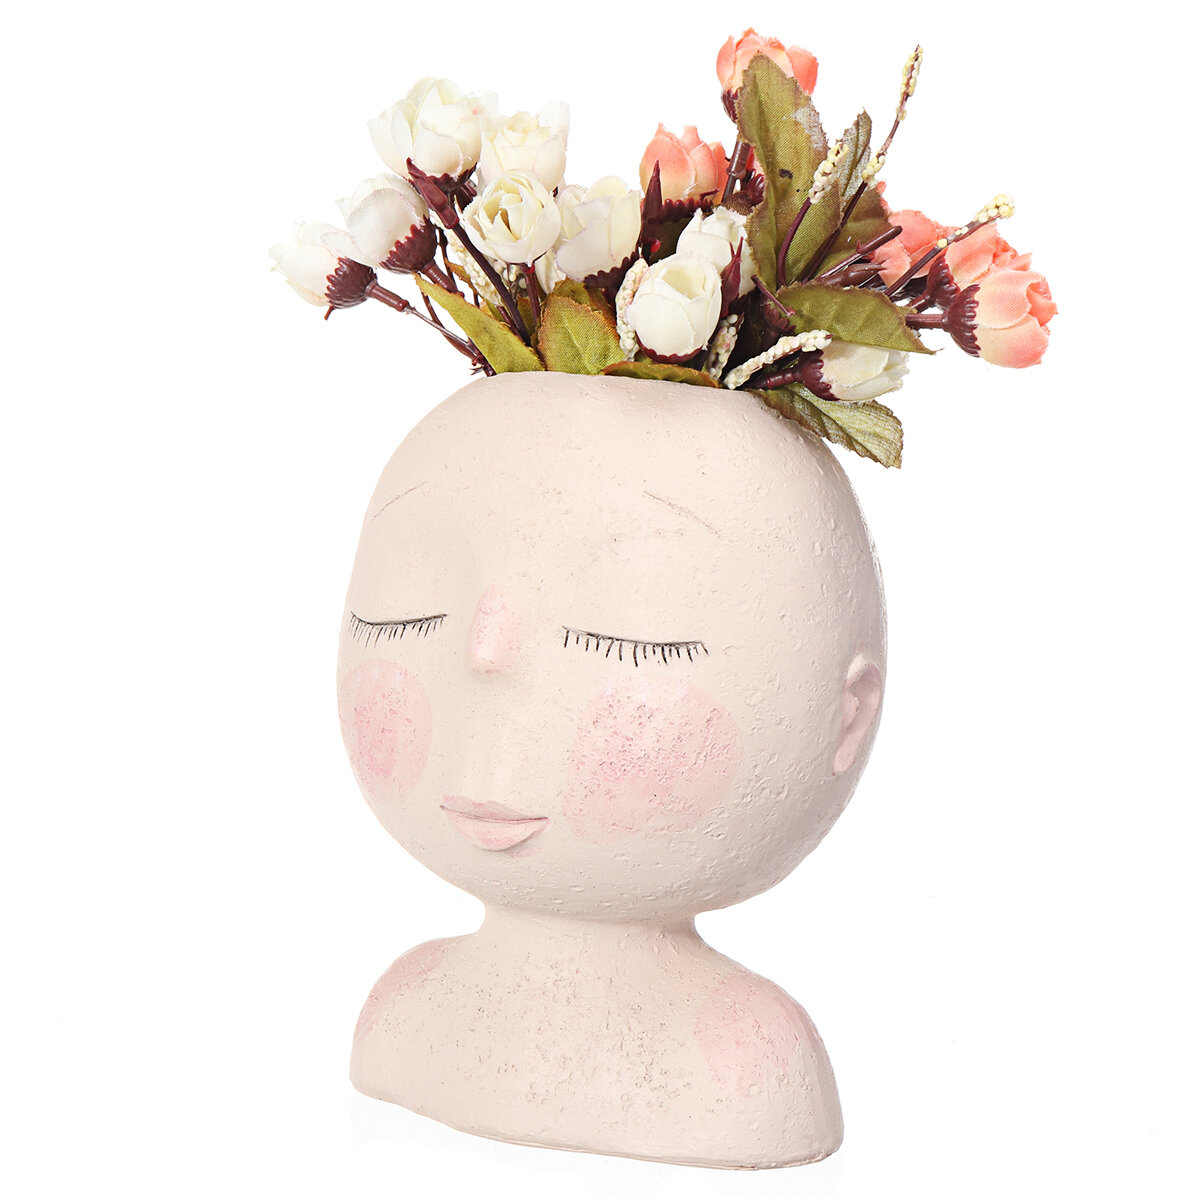 Nordic Doll Shaped Flower Pot Sculpture Flower Pot Art Vase Home Decor Succulents Head Shaped Vase Ornament COD